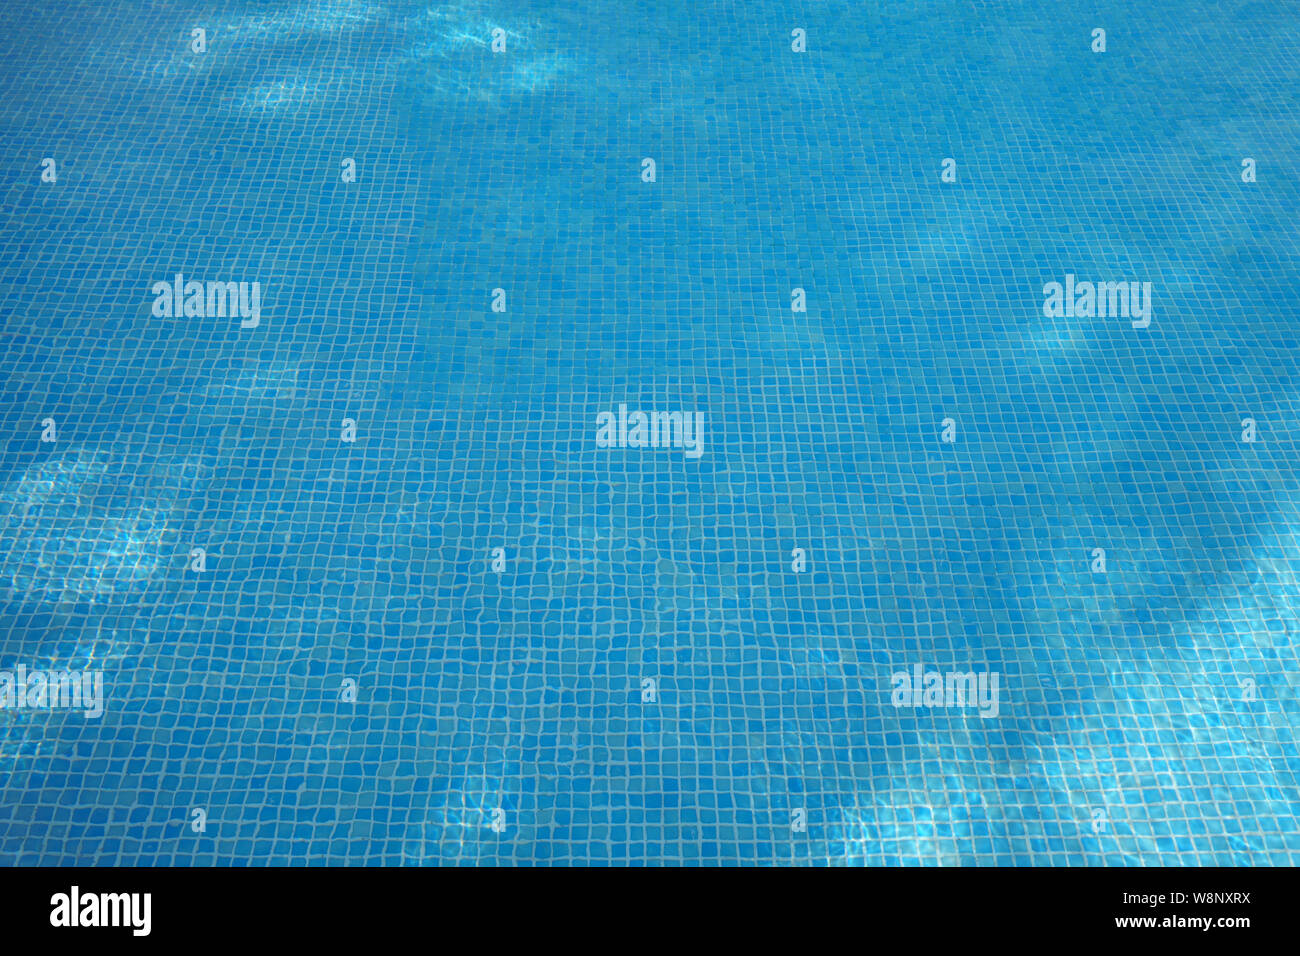 Soleil bleu de l'eau dans une piscine. Banque D'Images